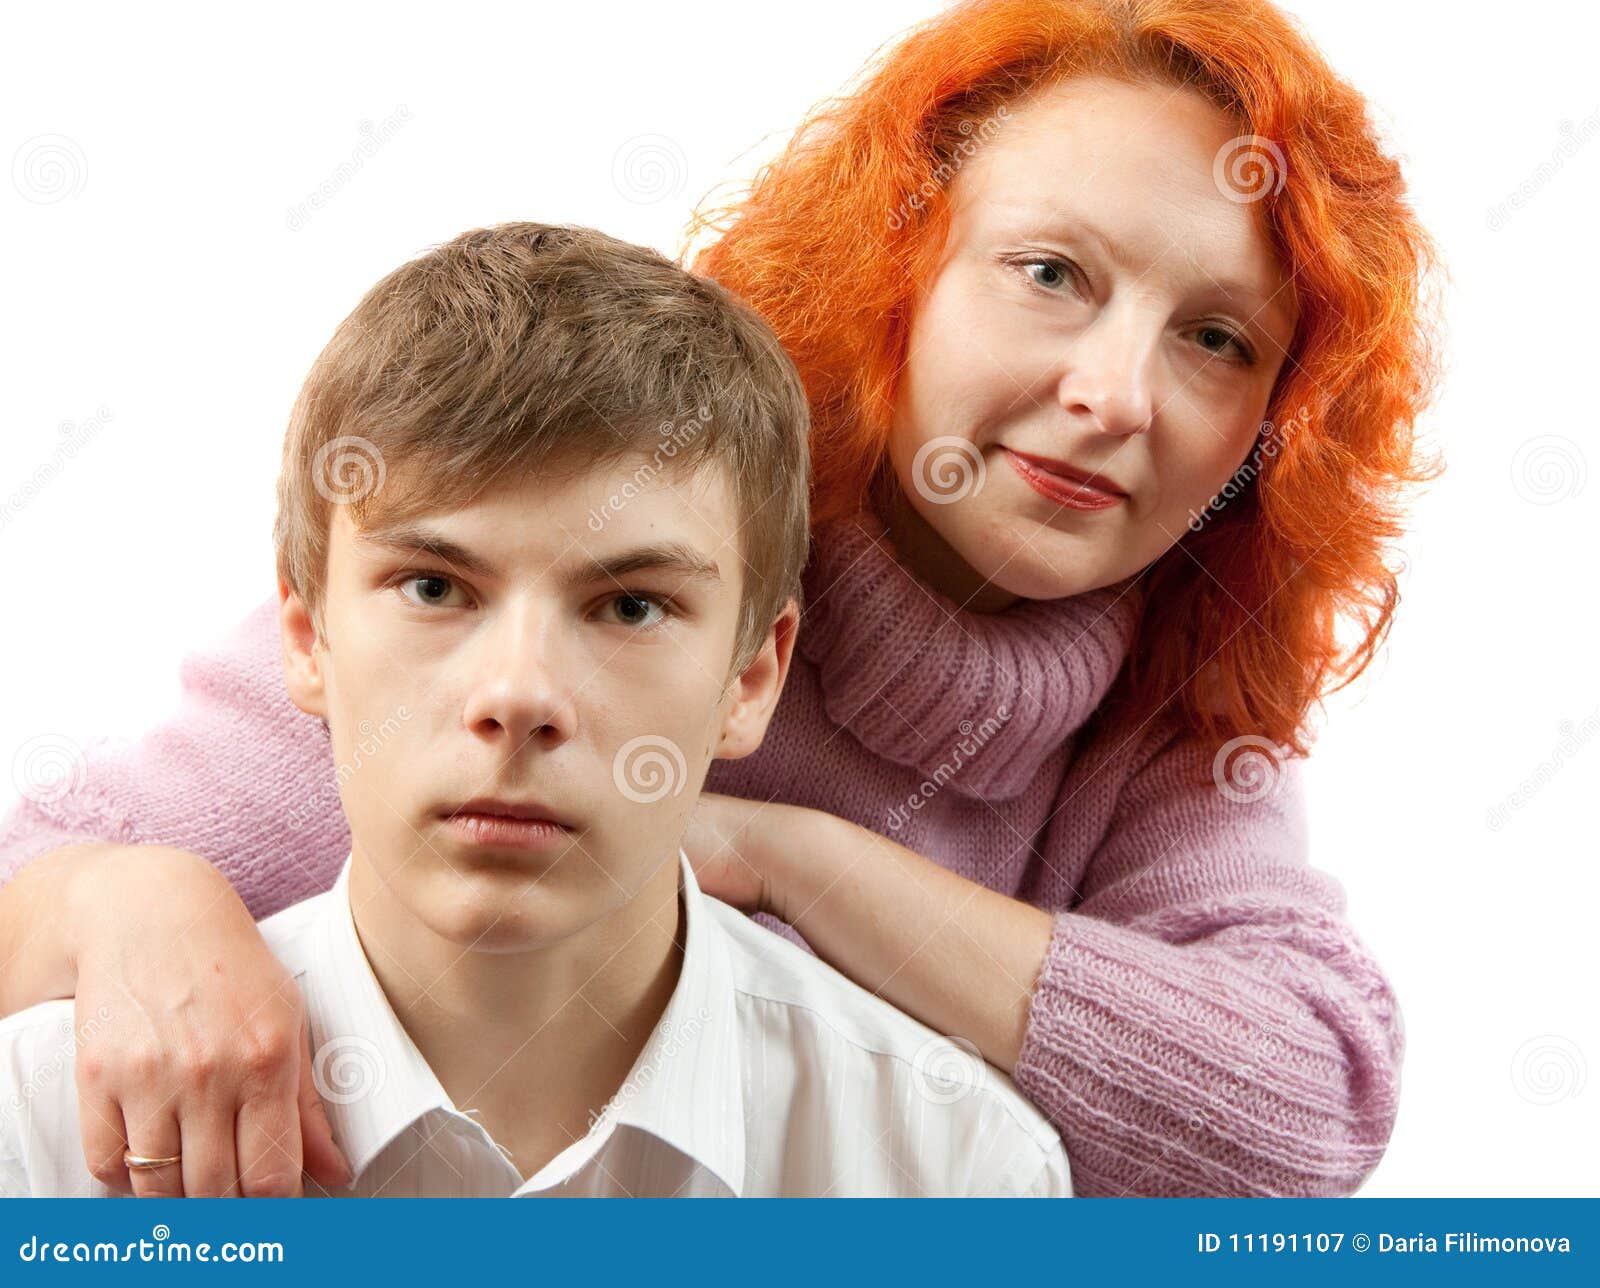 Мамы скрыто дают сыновьям. Рыжая с сыном. Рыжая мать. Несовершеннолетний сын и мать. Фотосессия мама и взрослый сын.